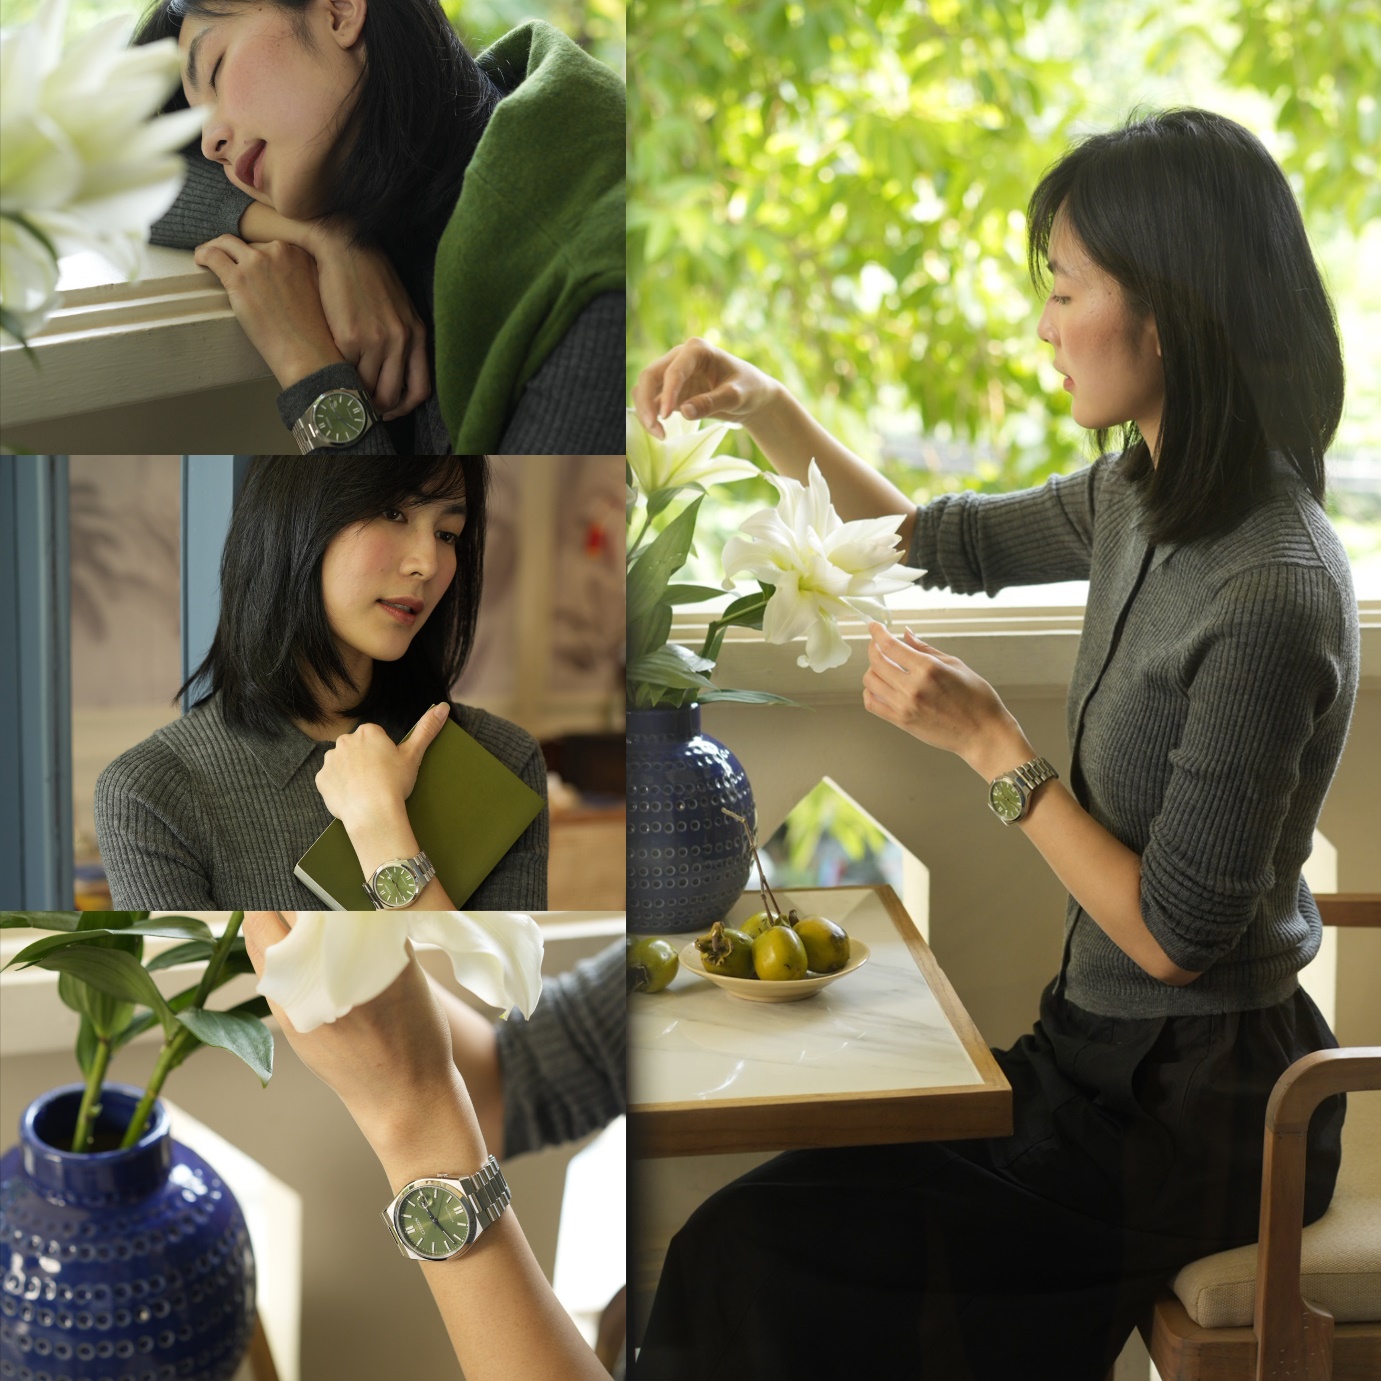 Học cách chọn màu sắc đồng hồ thể hiện cá tính “chuẩn” như sao Việt - Ảnh 4.